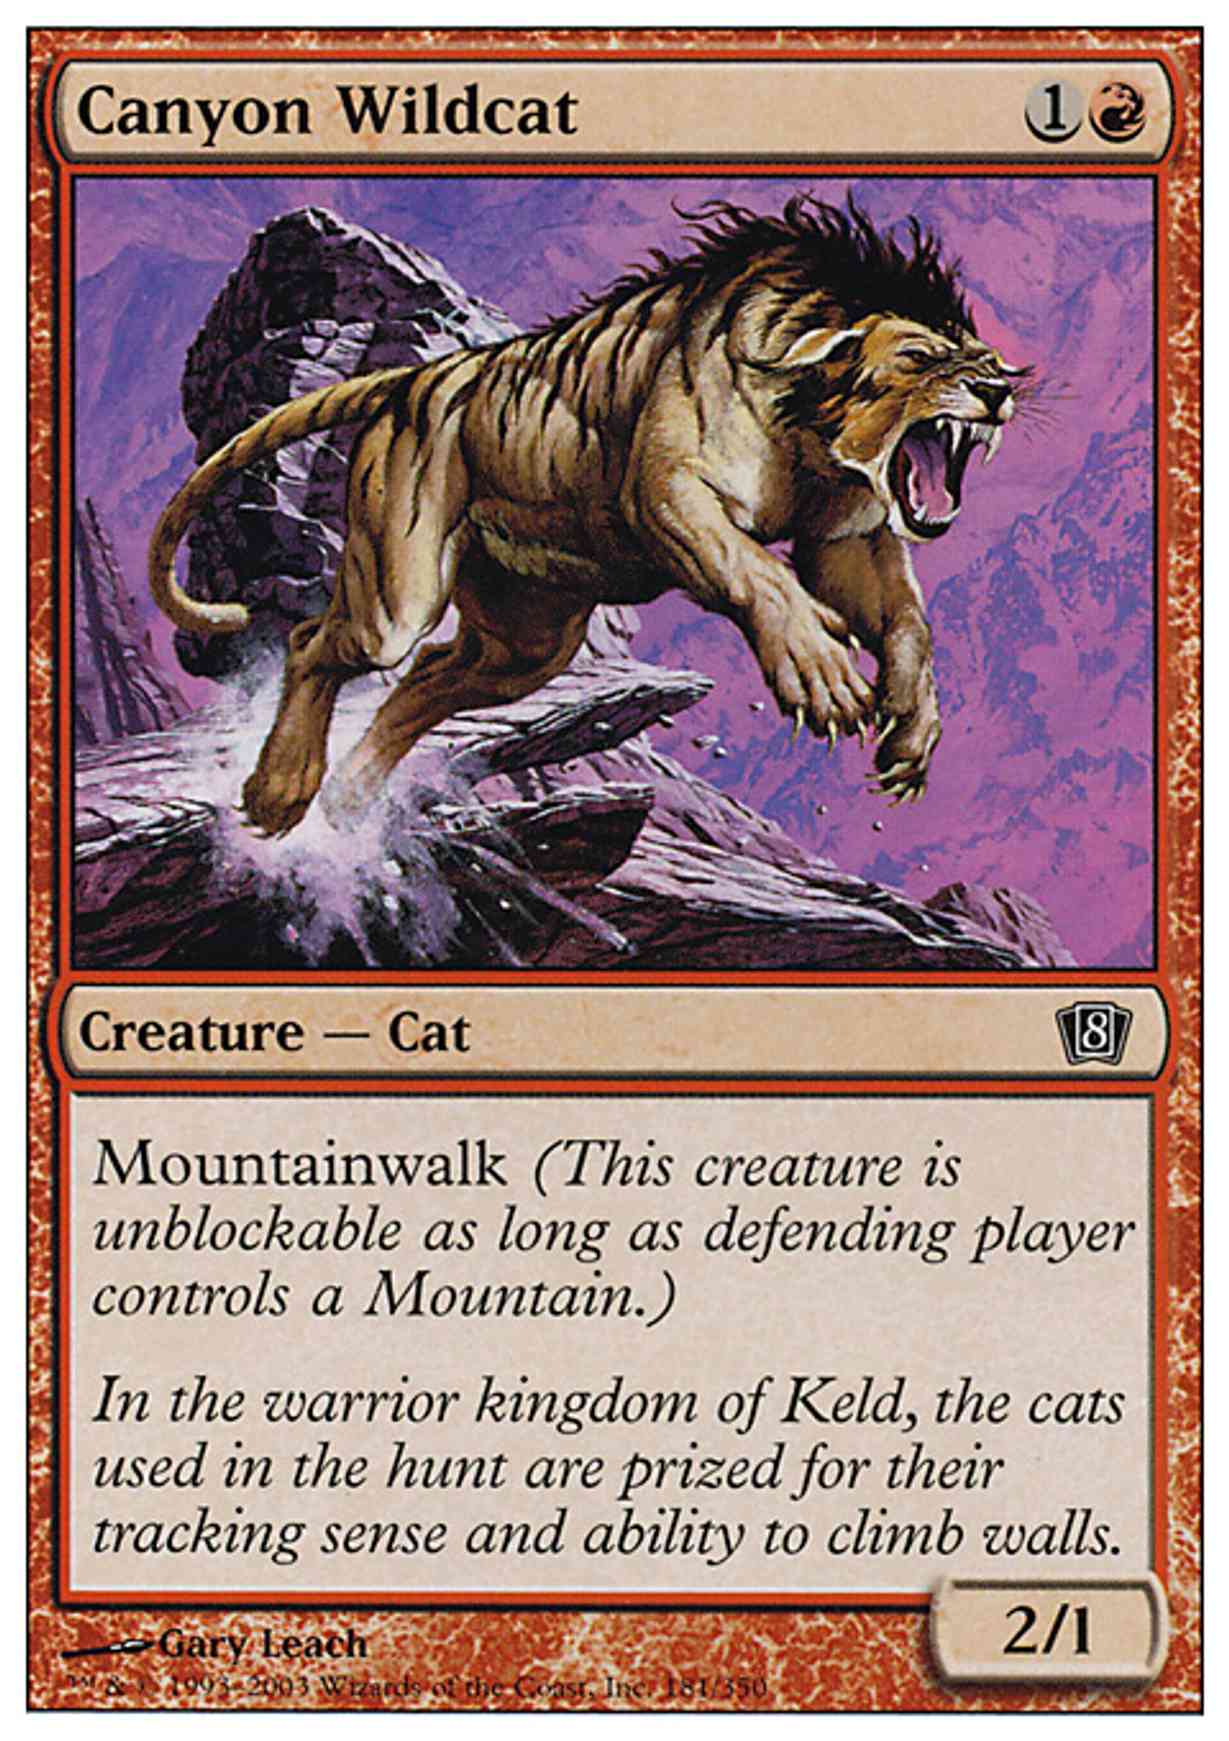 Canyon Wildcat magic card front